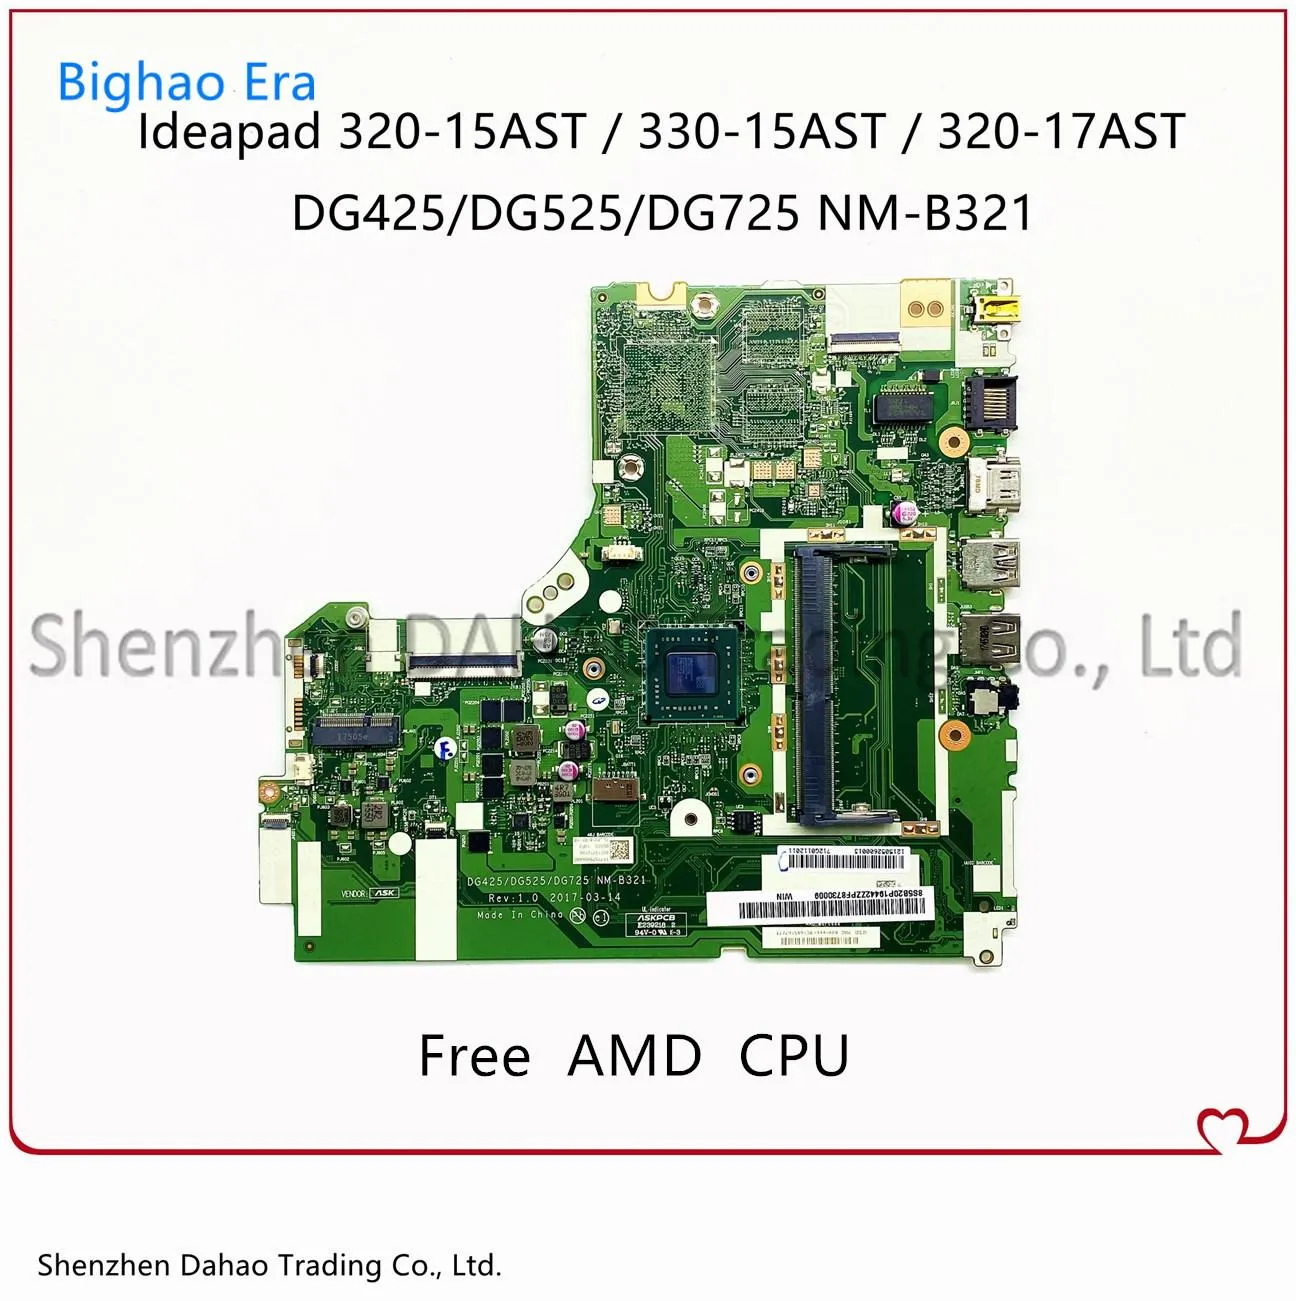 Placa -mãe para Lenovo 32015AST 33015AST 32017AST PARATEME DE LAPTOPO COM AMD E2 A4 A6 A9 CPU DDR4 DG425 DG525 DG725 NMB321 MAINBOLA